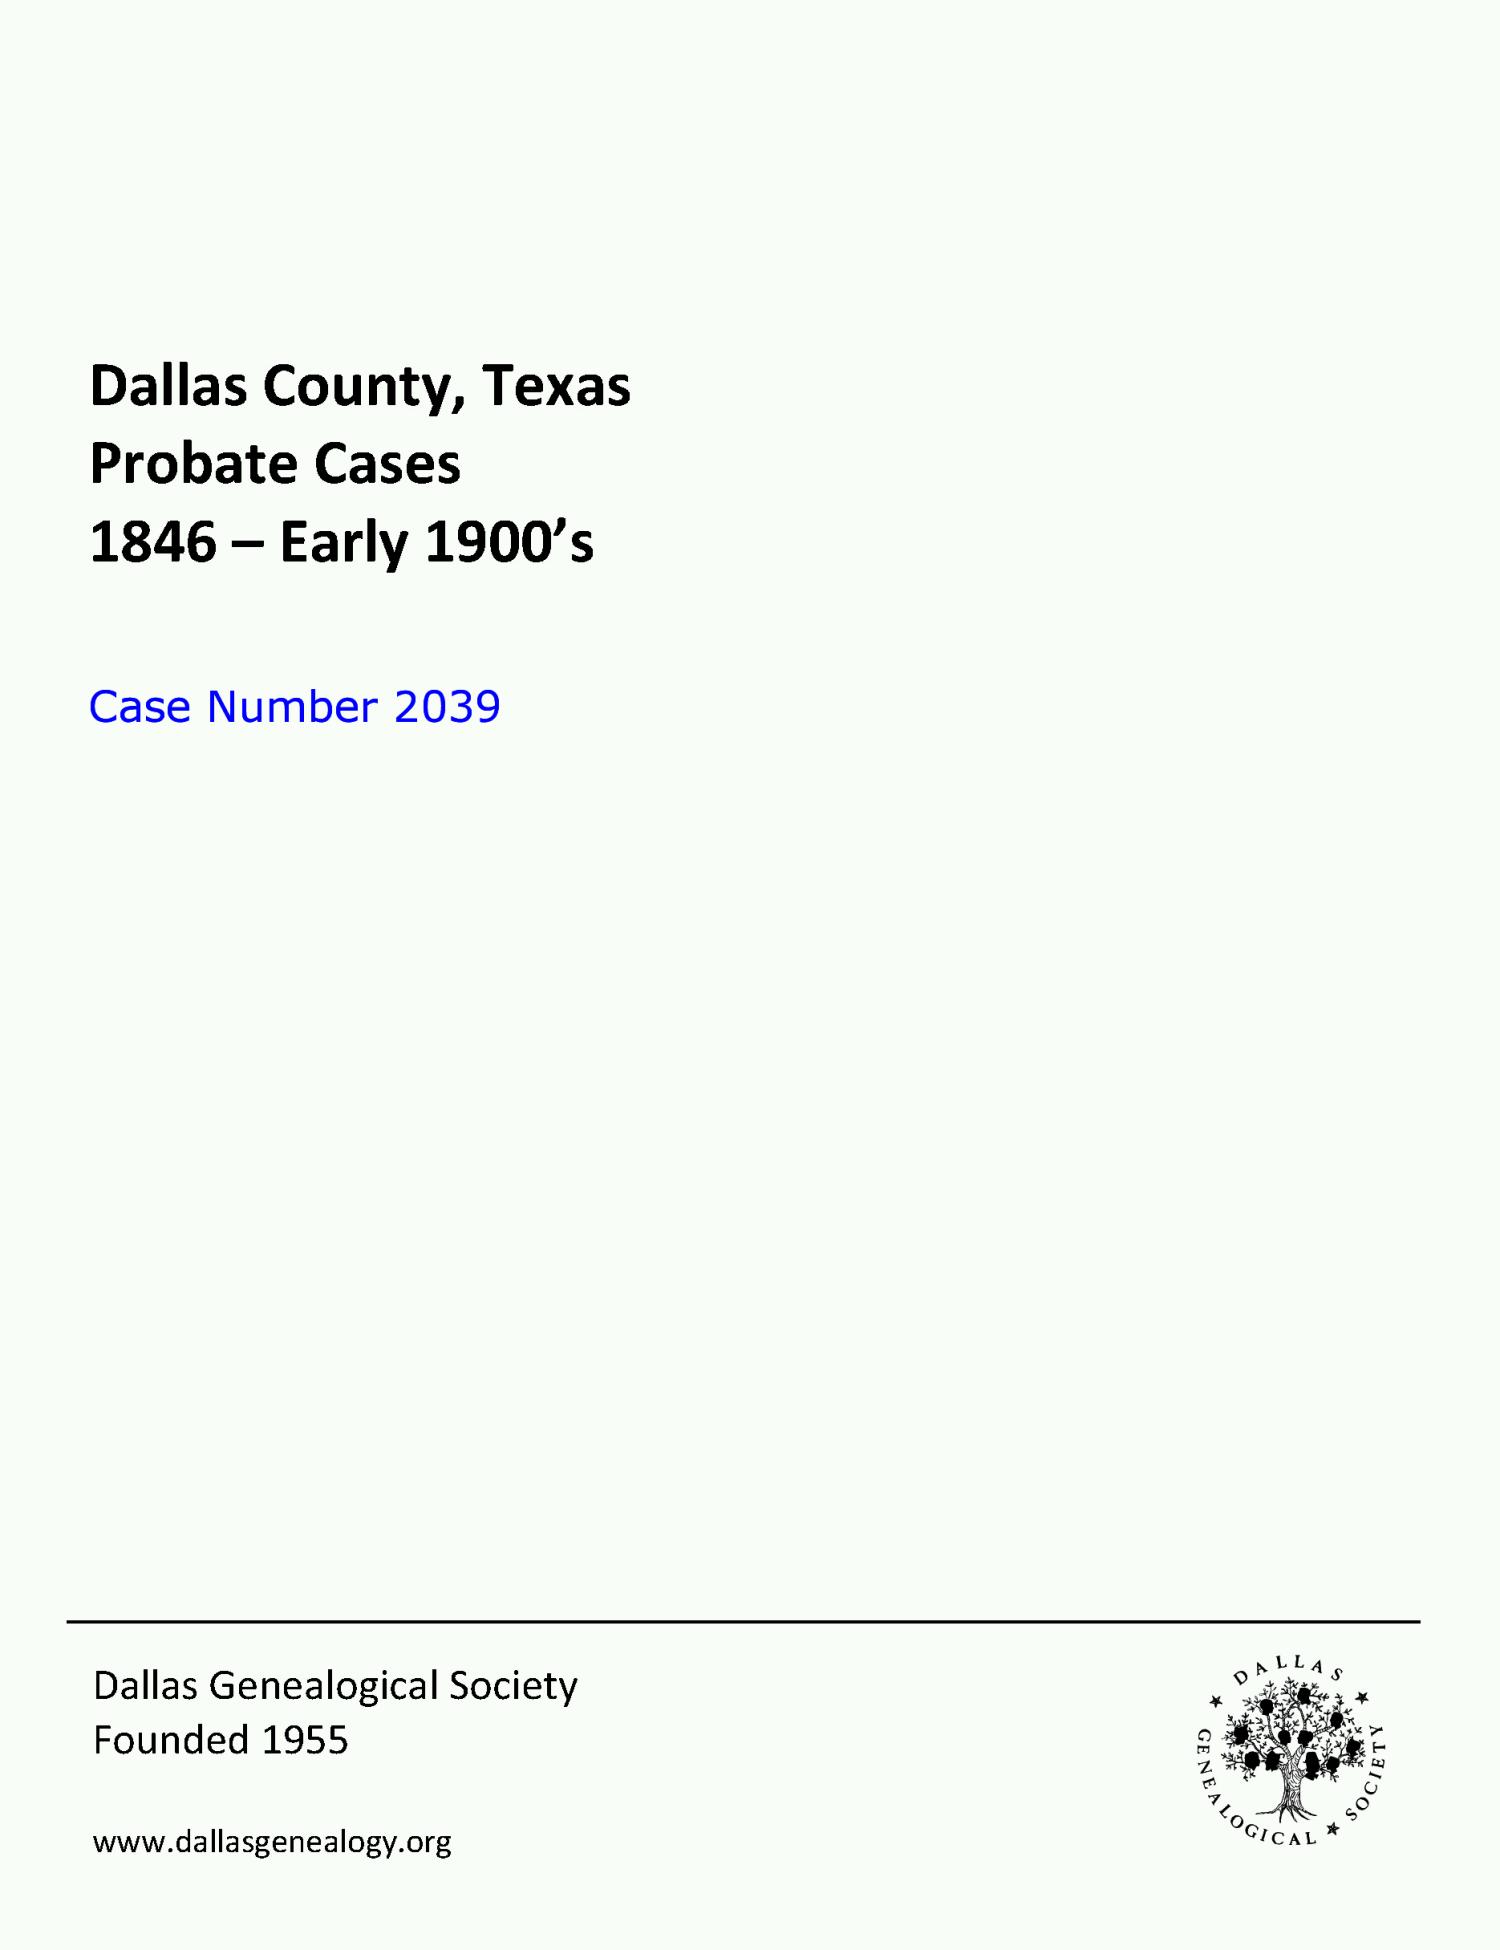 Dallas County Probate Case 2039: Bullock, Dora L. (Minor)
                                                
                                                    [Sequence #]: 1 of 83
                                                